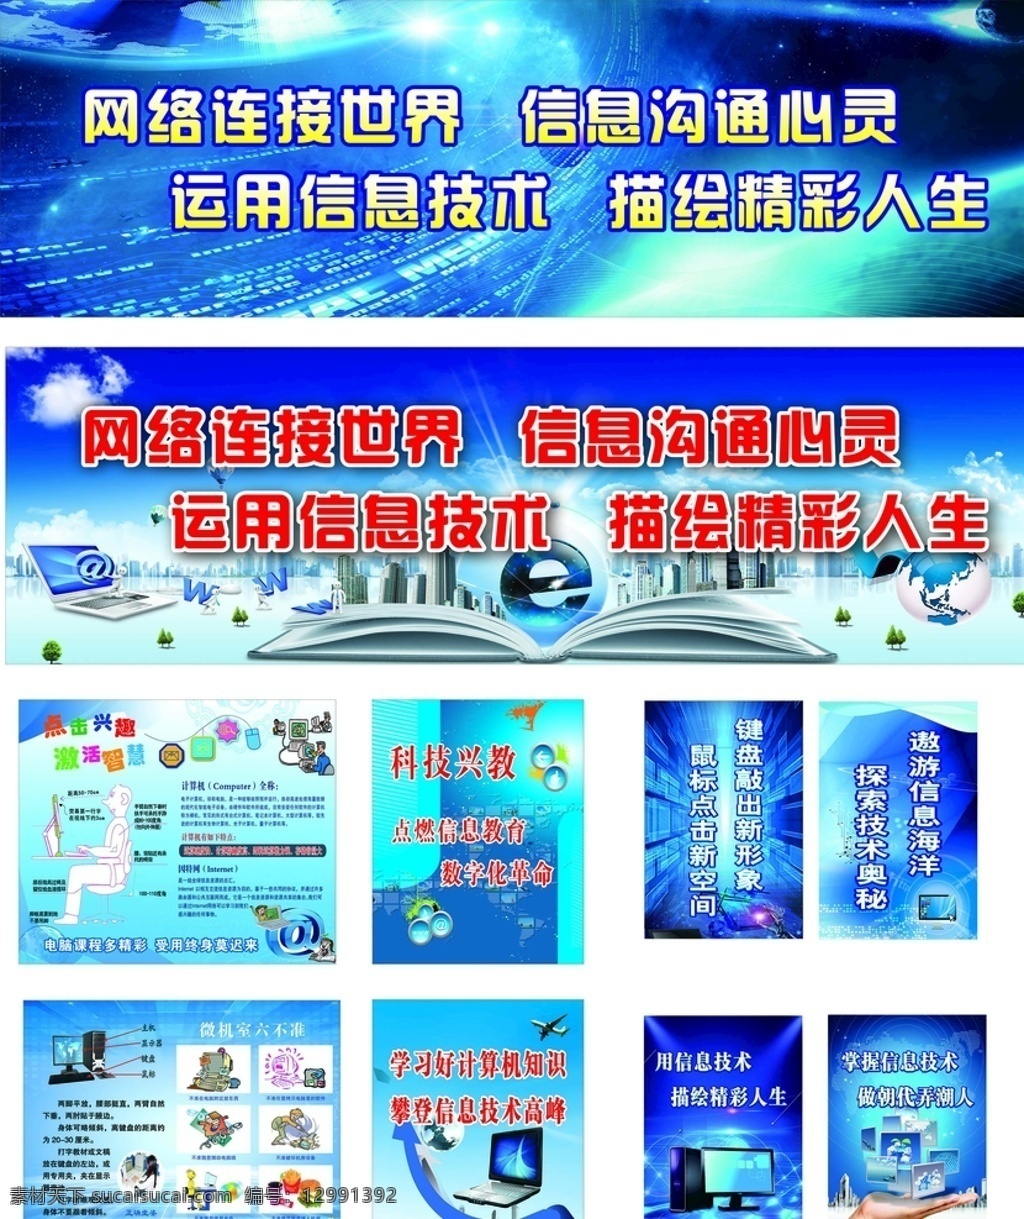 电脑室宣传画 电脑室 微机 电脑宣传标语 科技蓝 蓝色背景